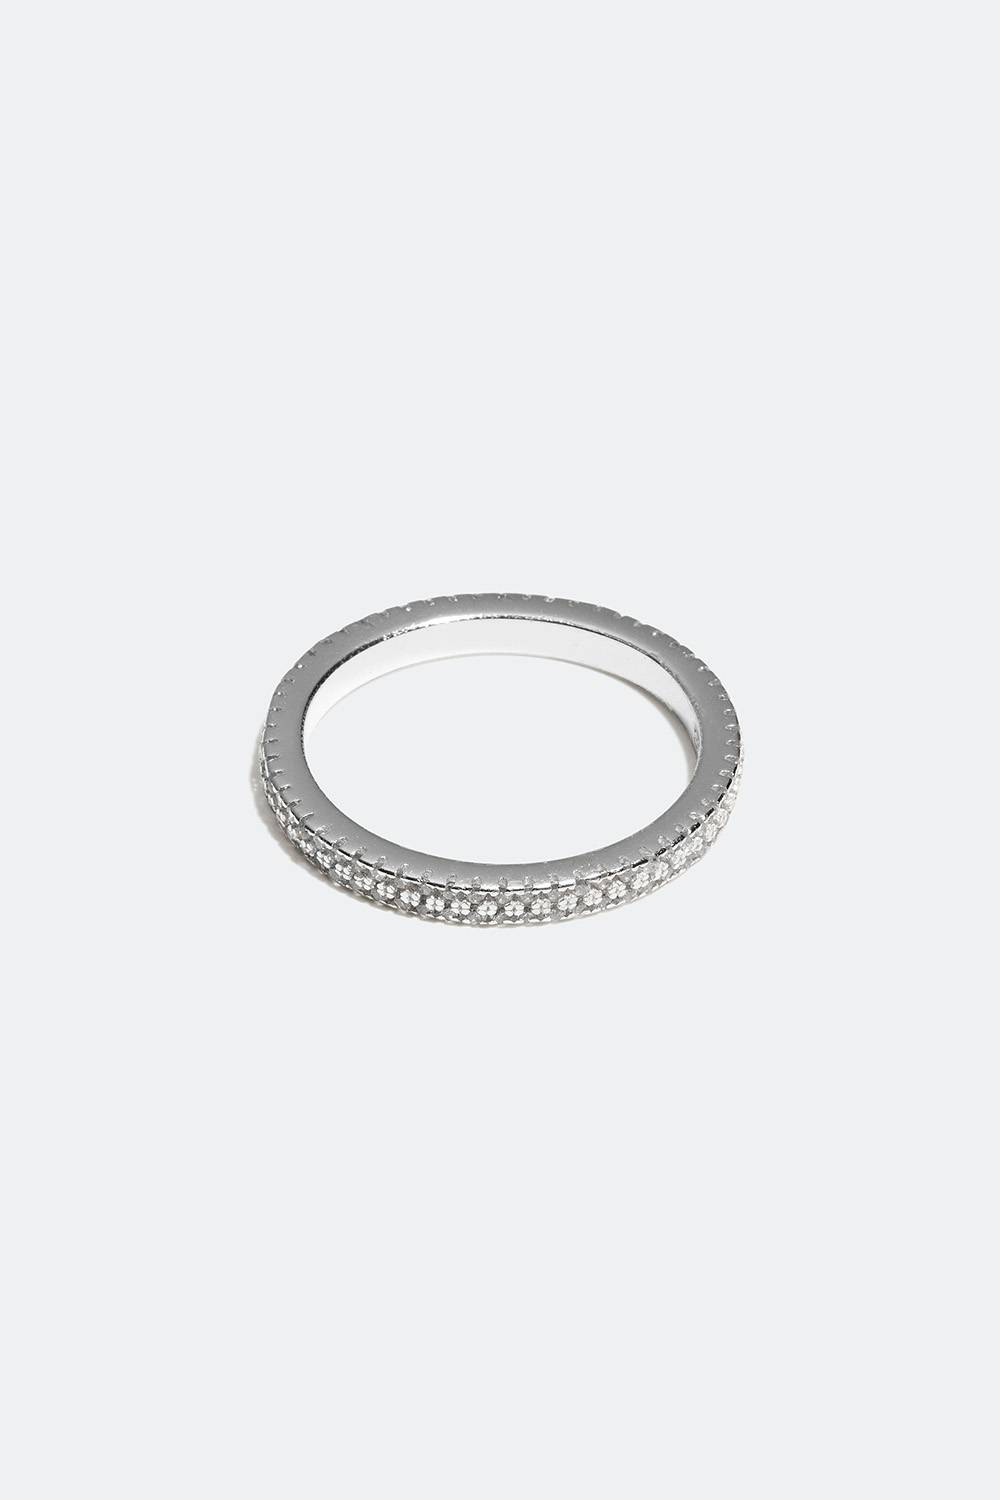 Ring i ægte sølv med små Cubic Zirconia sten i gruppen Ægte sølv / Sølvringe / Sølv hos Glitter (55600055)